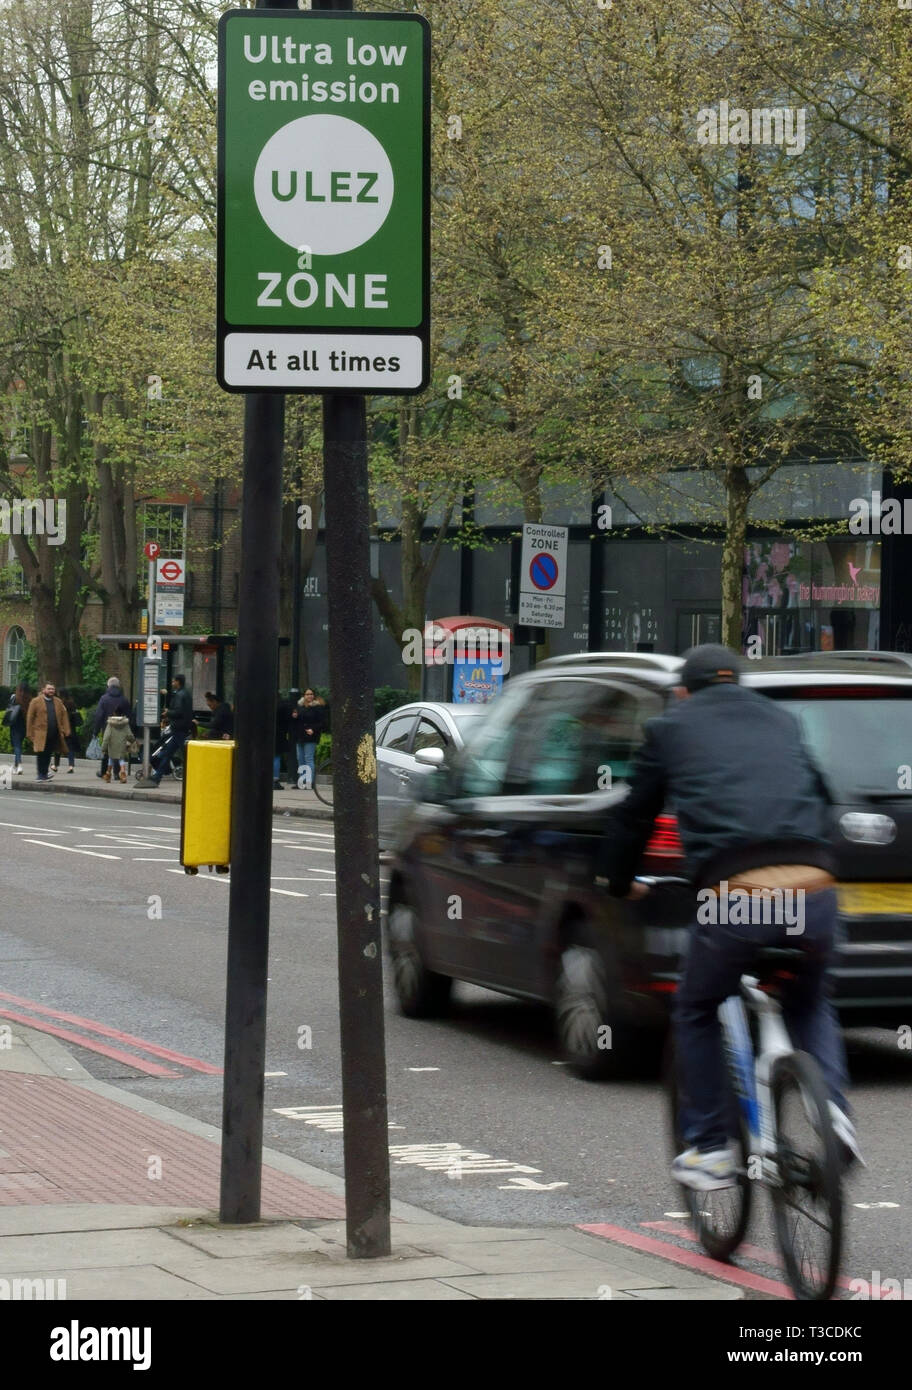 Ultra zona de baja emisión (ULEZ) entró en vigor en la zona de peaje urbano de Londres el 8 de abril de 2019 Foto de stock